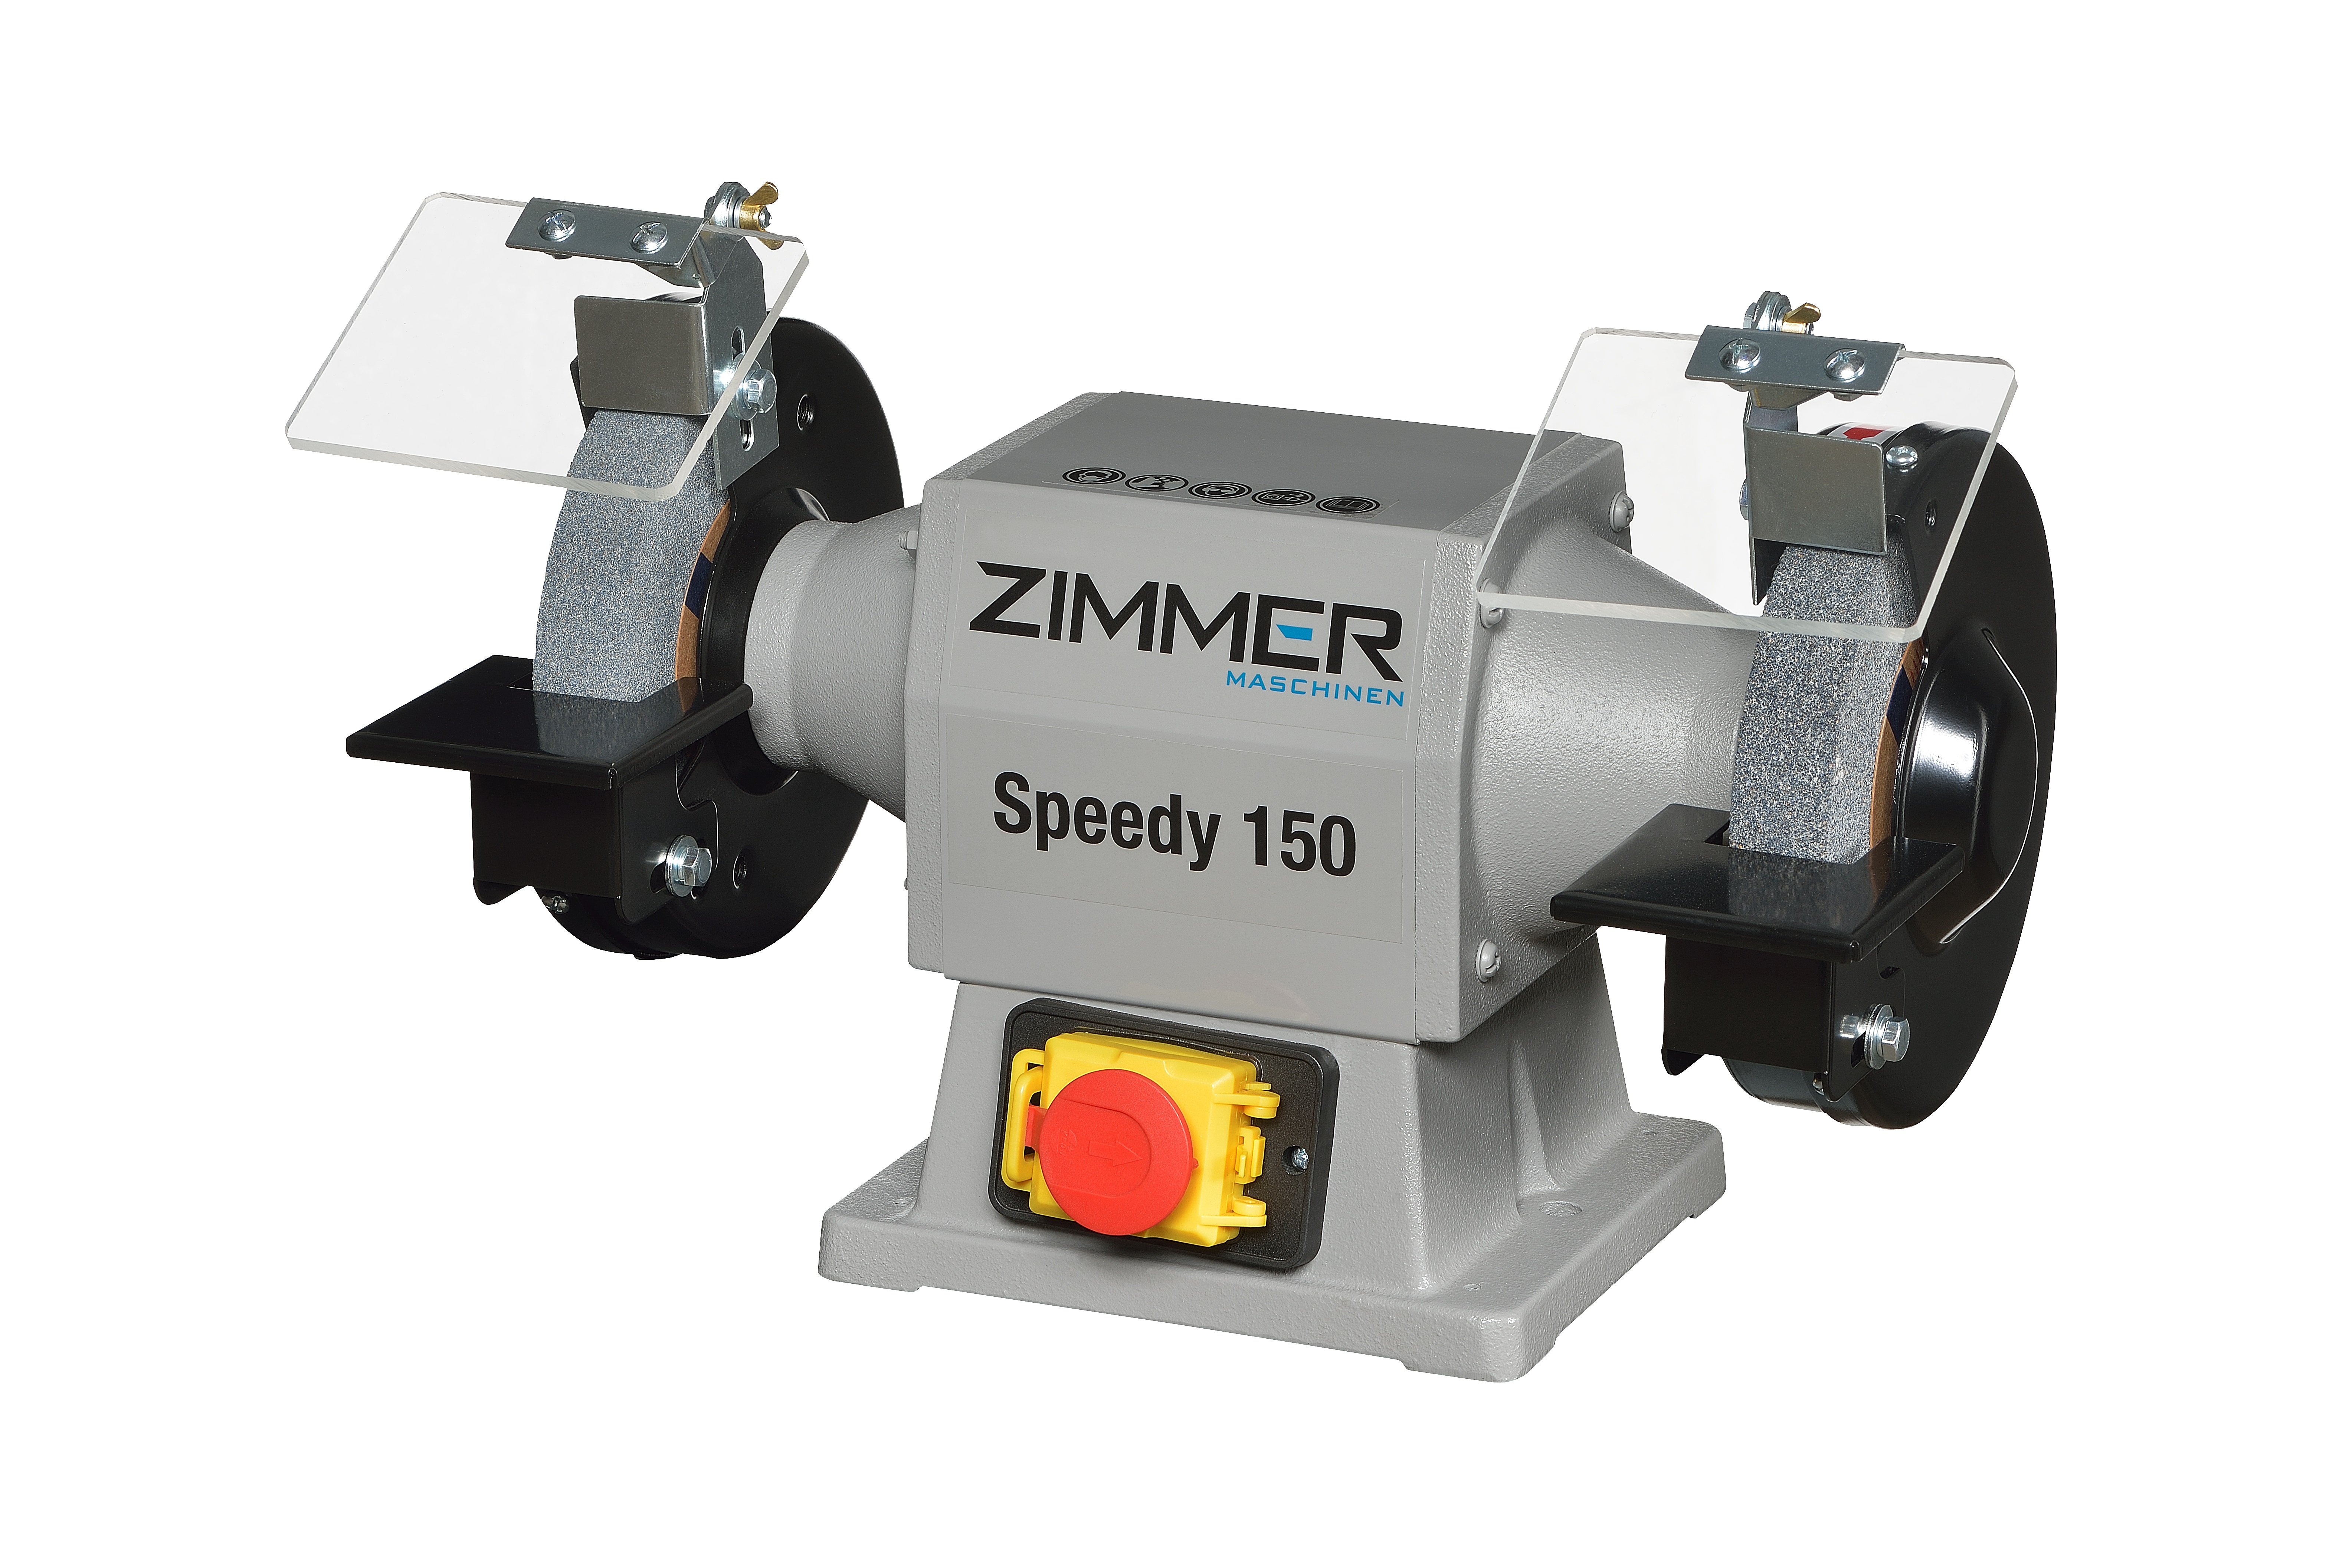 ZIMMER Doppelschleifmaschine Modell SPEEDY 150 (1x Korund A36 / 1x Korund A60 serienmäßig 150x25x20mm) 2.850 1/min. - 0,45kW - 230V